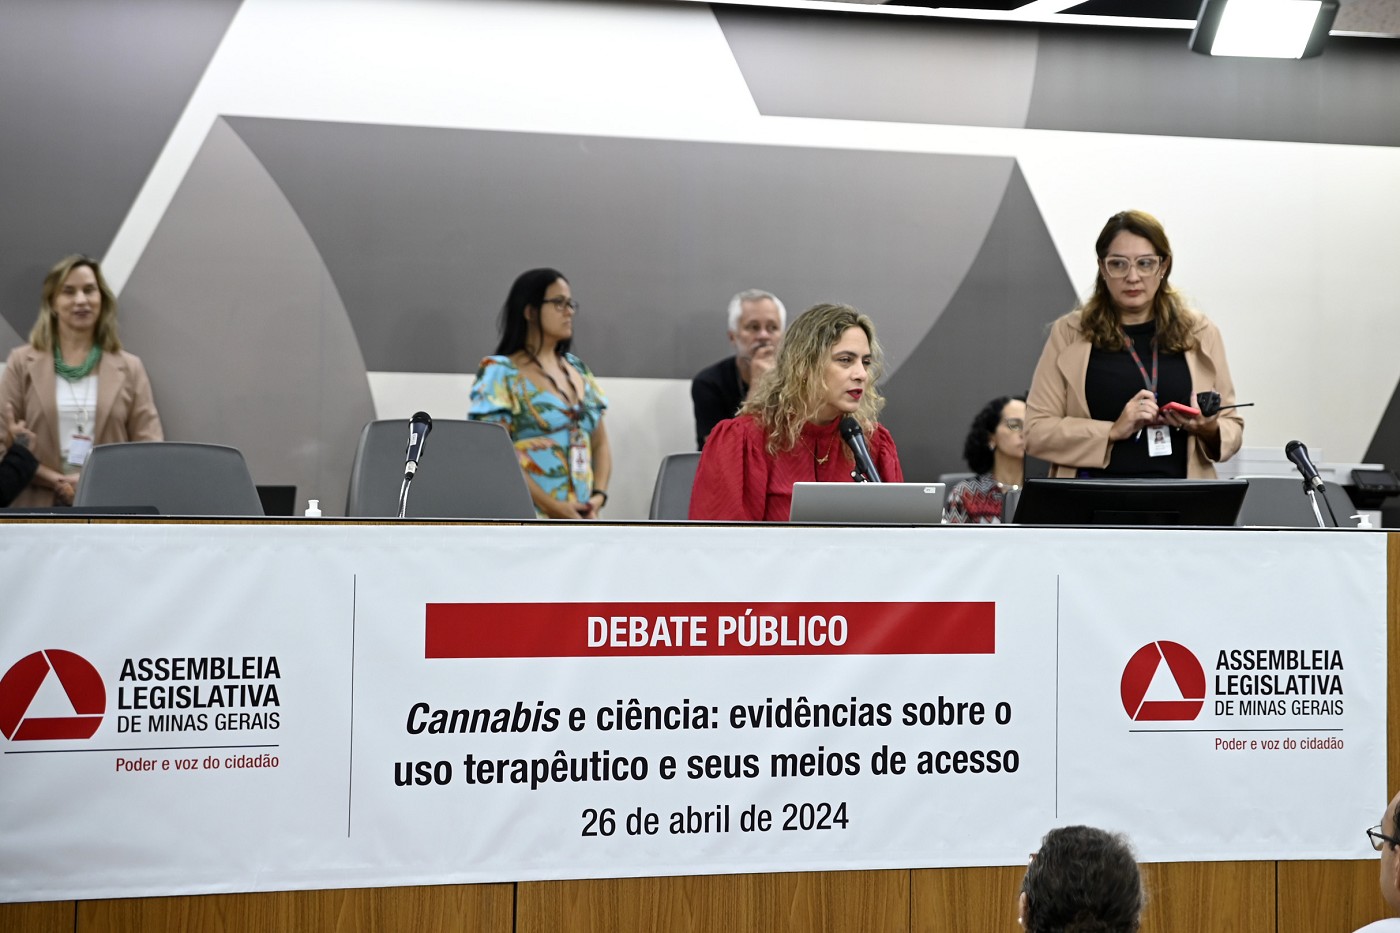 Debate público - Cannabis e ciência: evidências sobre o uso terapêutico e seus meios de acesso (manhã)